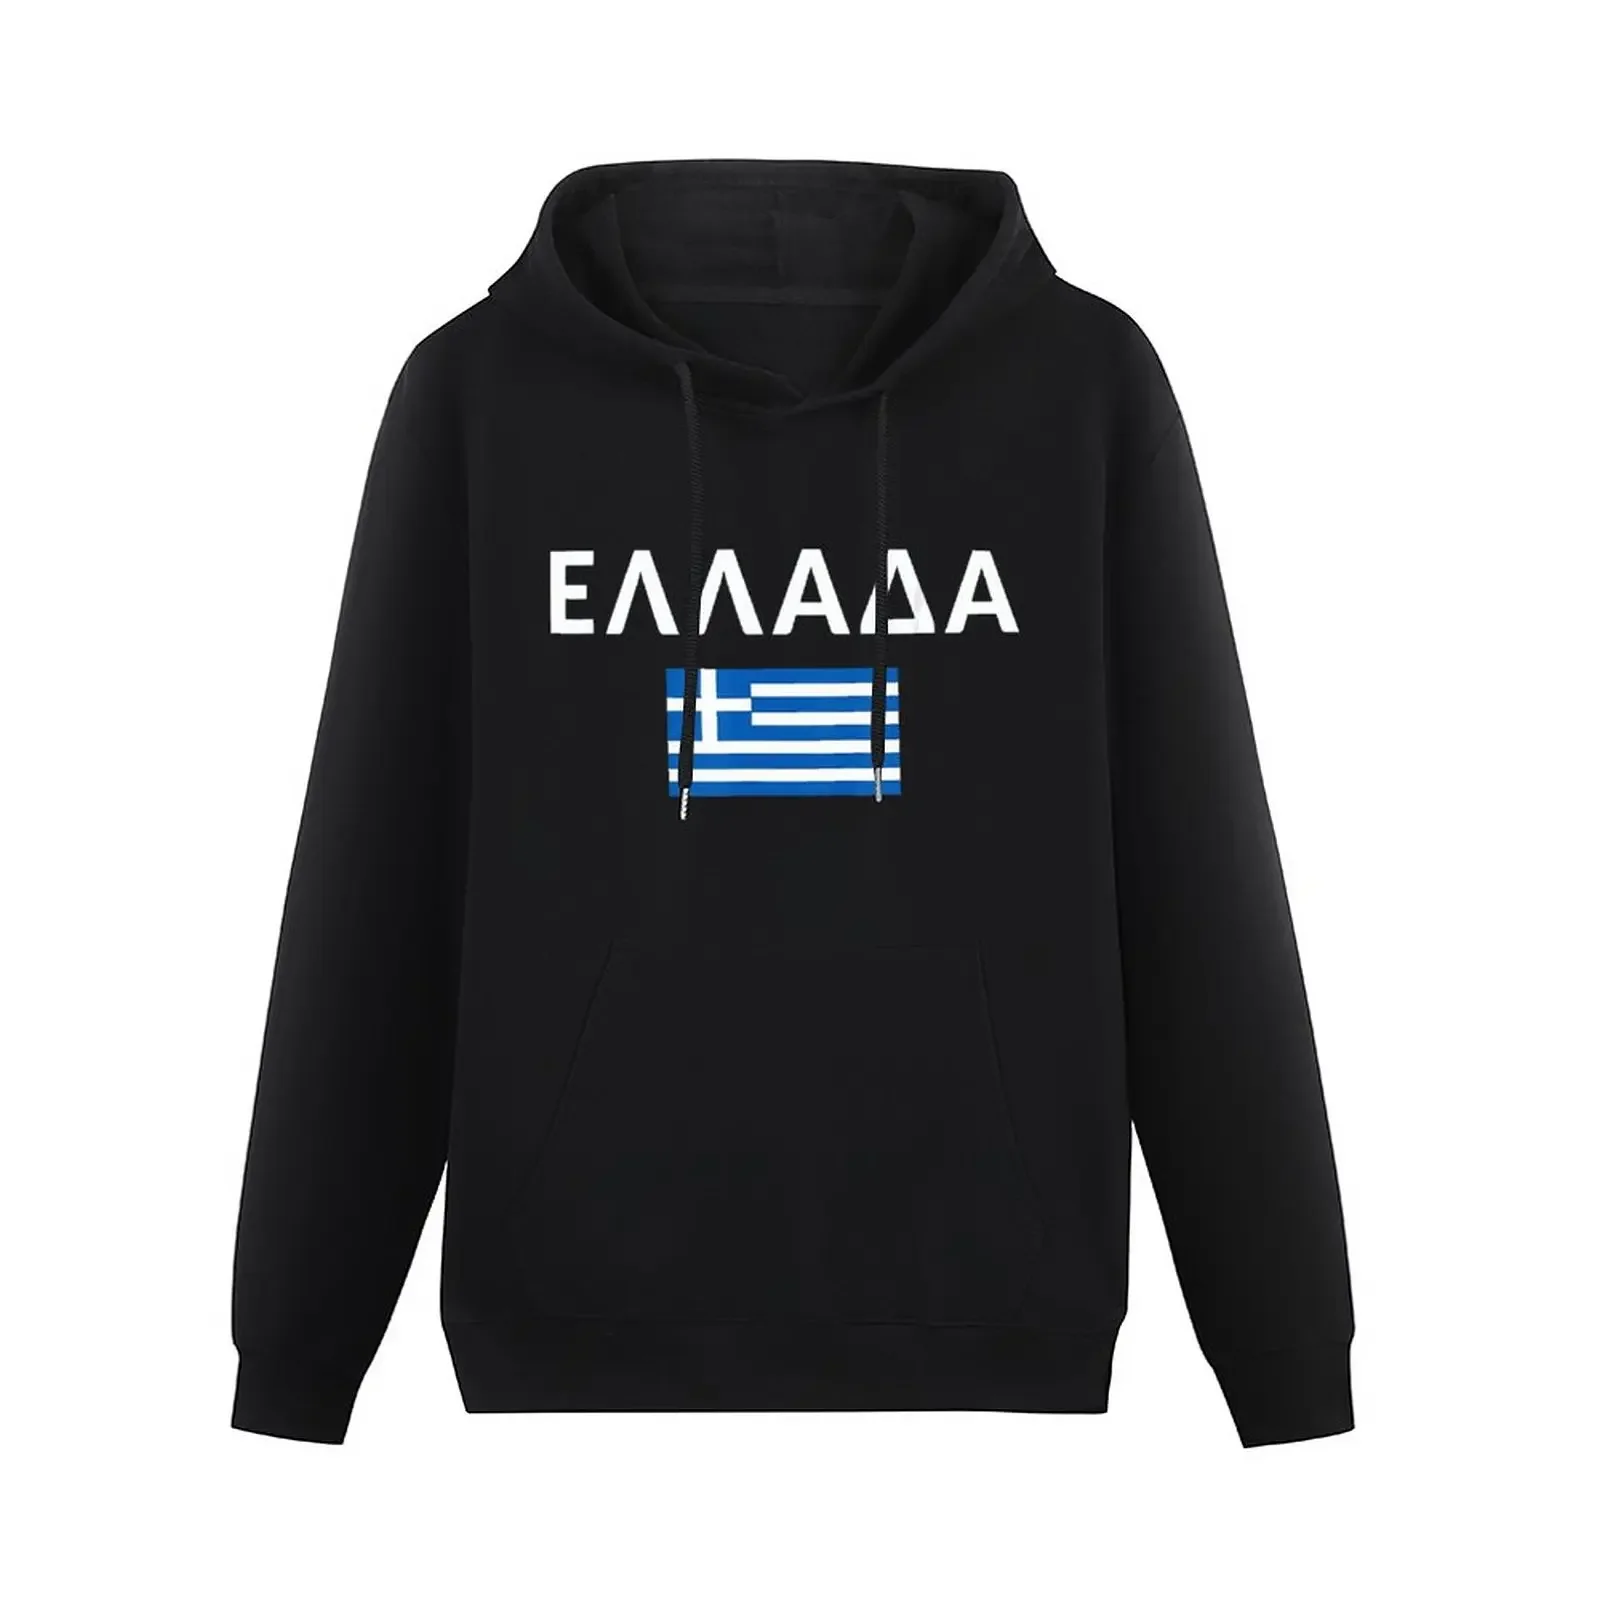 

Толстовка унисекс с капюшоном, хлопок, флаг Греции, карта греческой страны, пуловер в стиле хип-хоп